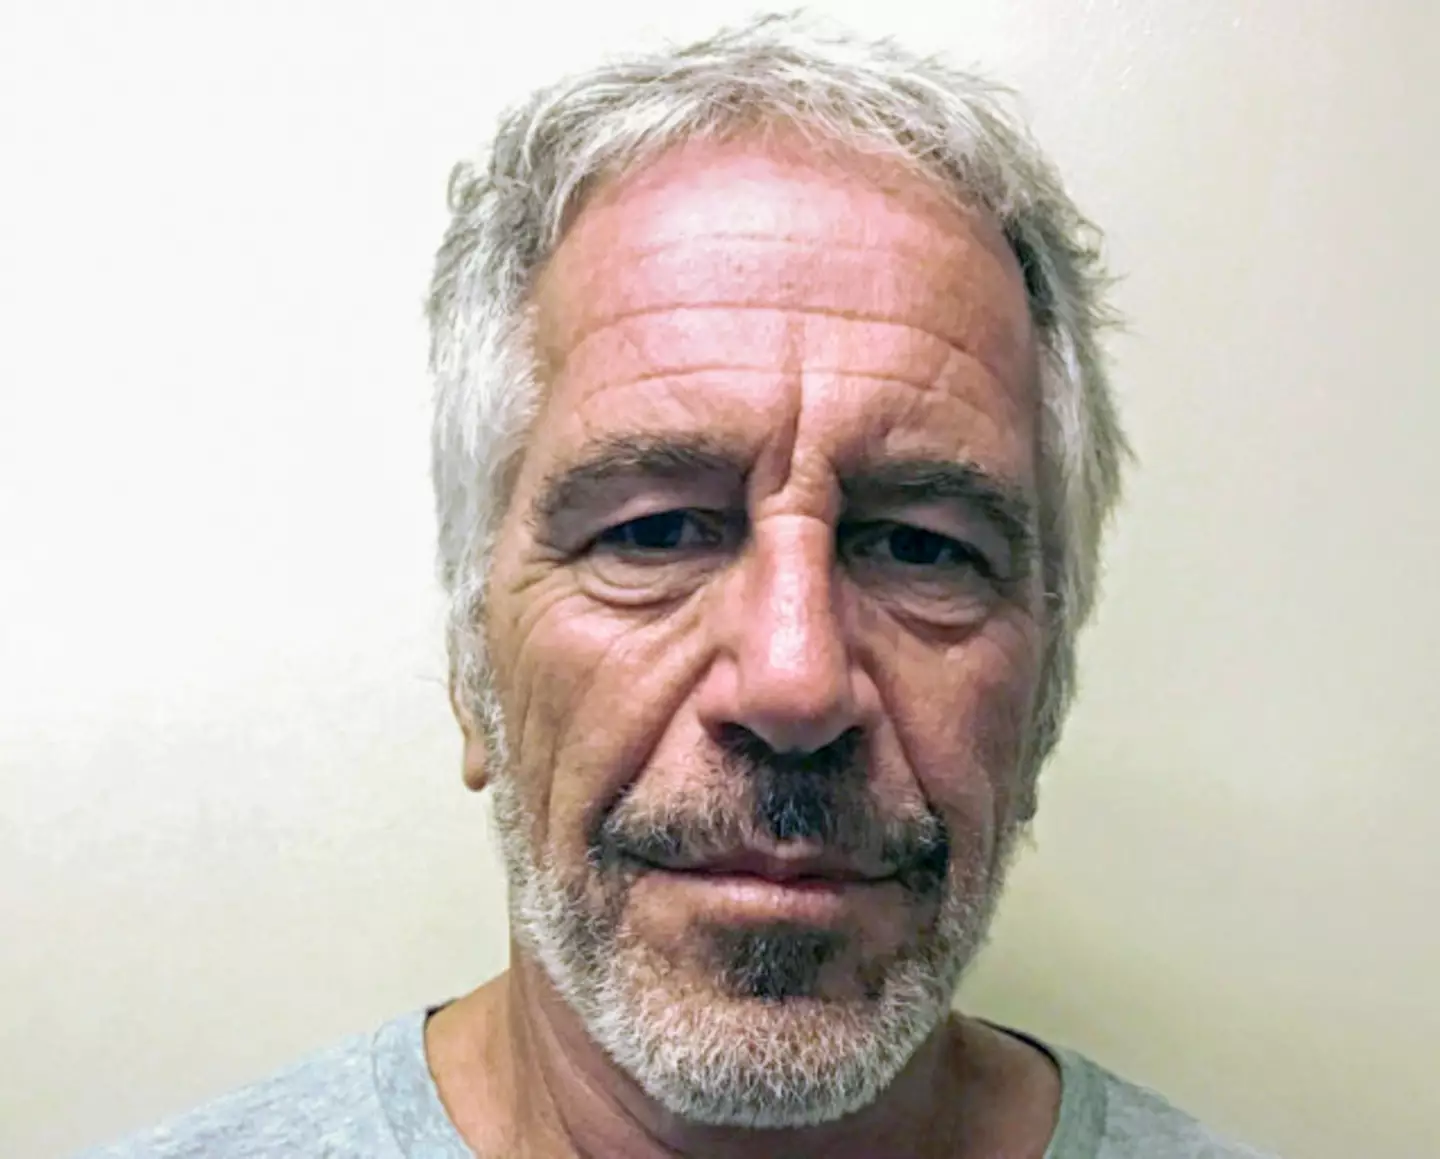 Jeffrey Epstein's mugshot in 2019.  (Kypros/Getty Images)